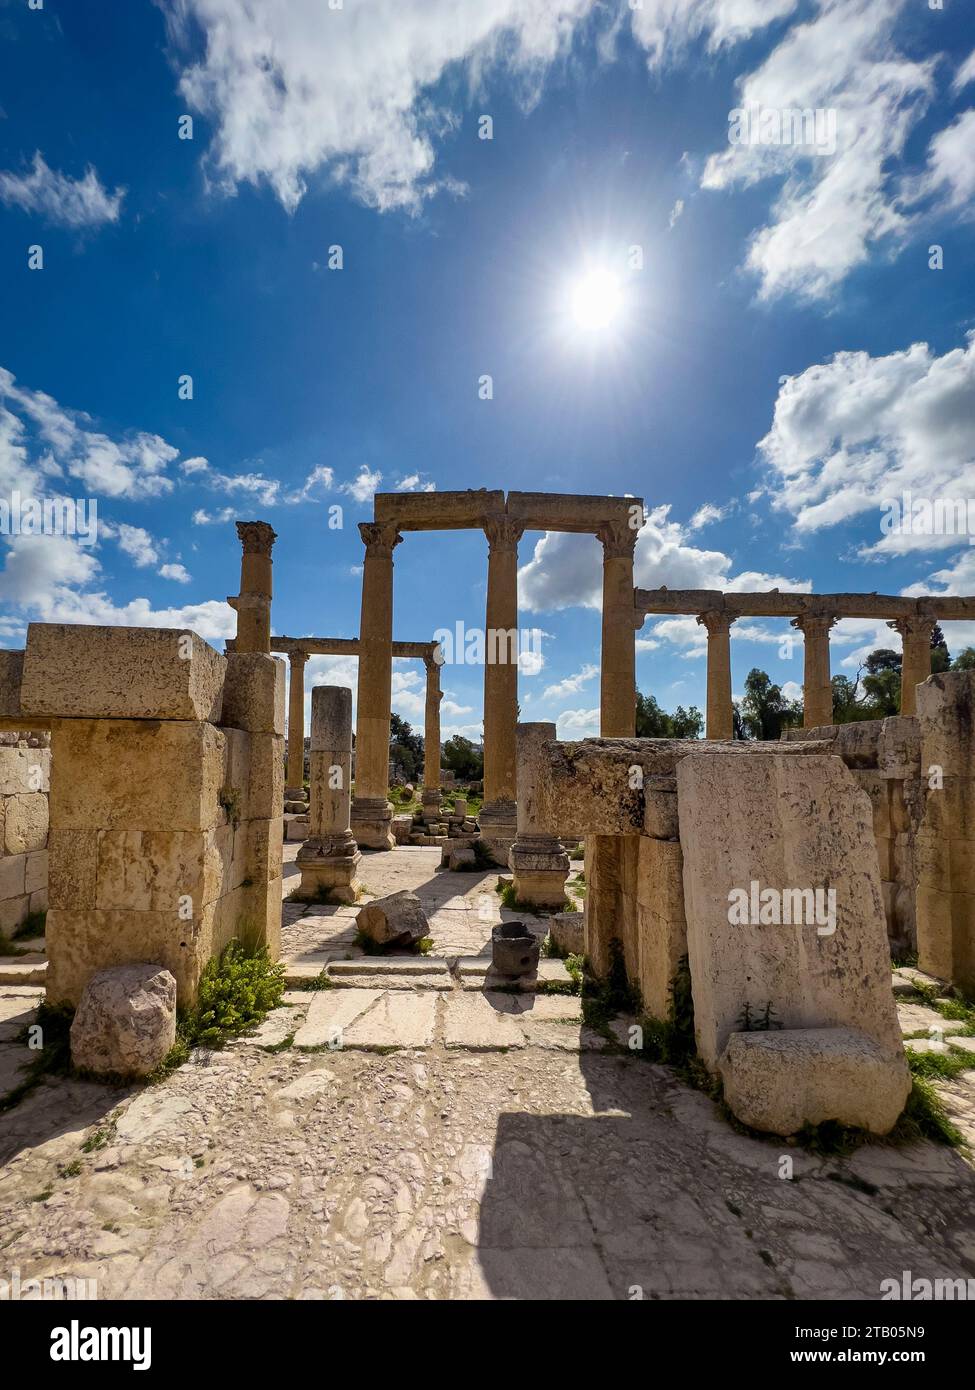 Colonnes dans l'ancienne ville de Jerash, qui aurait été fondée en 331 av. J.-C. par Alexandre le Grand, Jordanie Banque D'Images